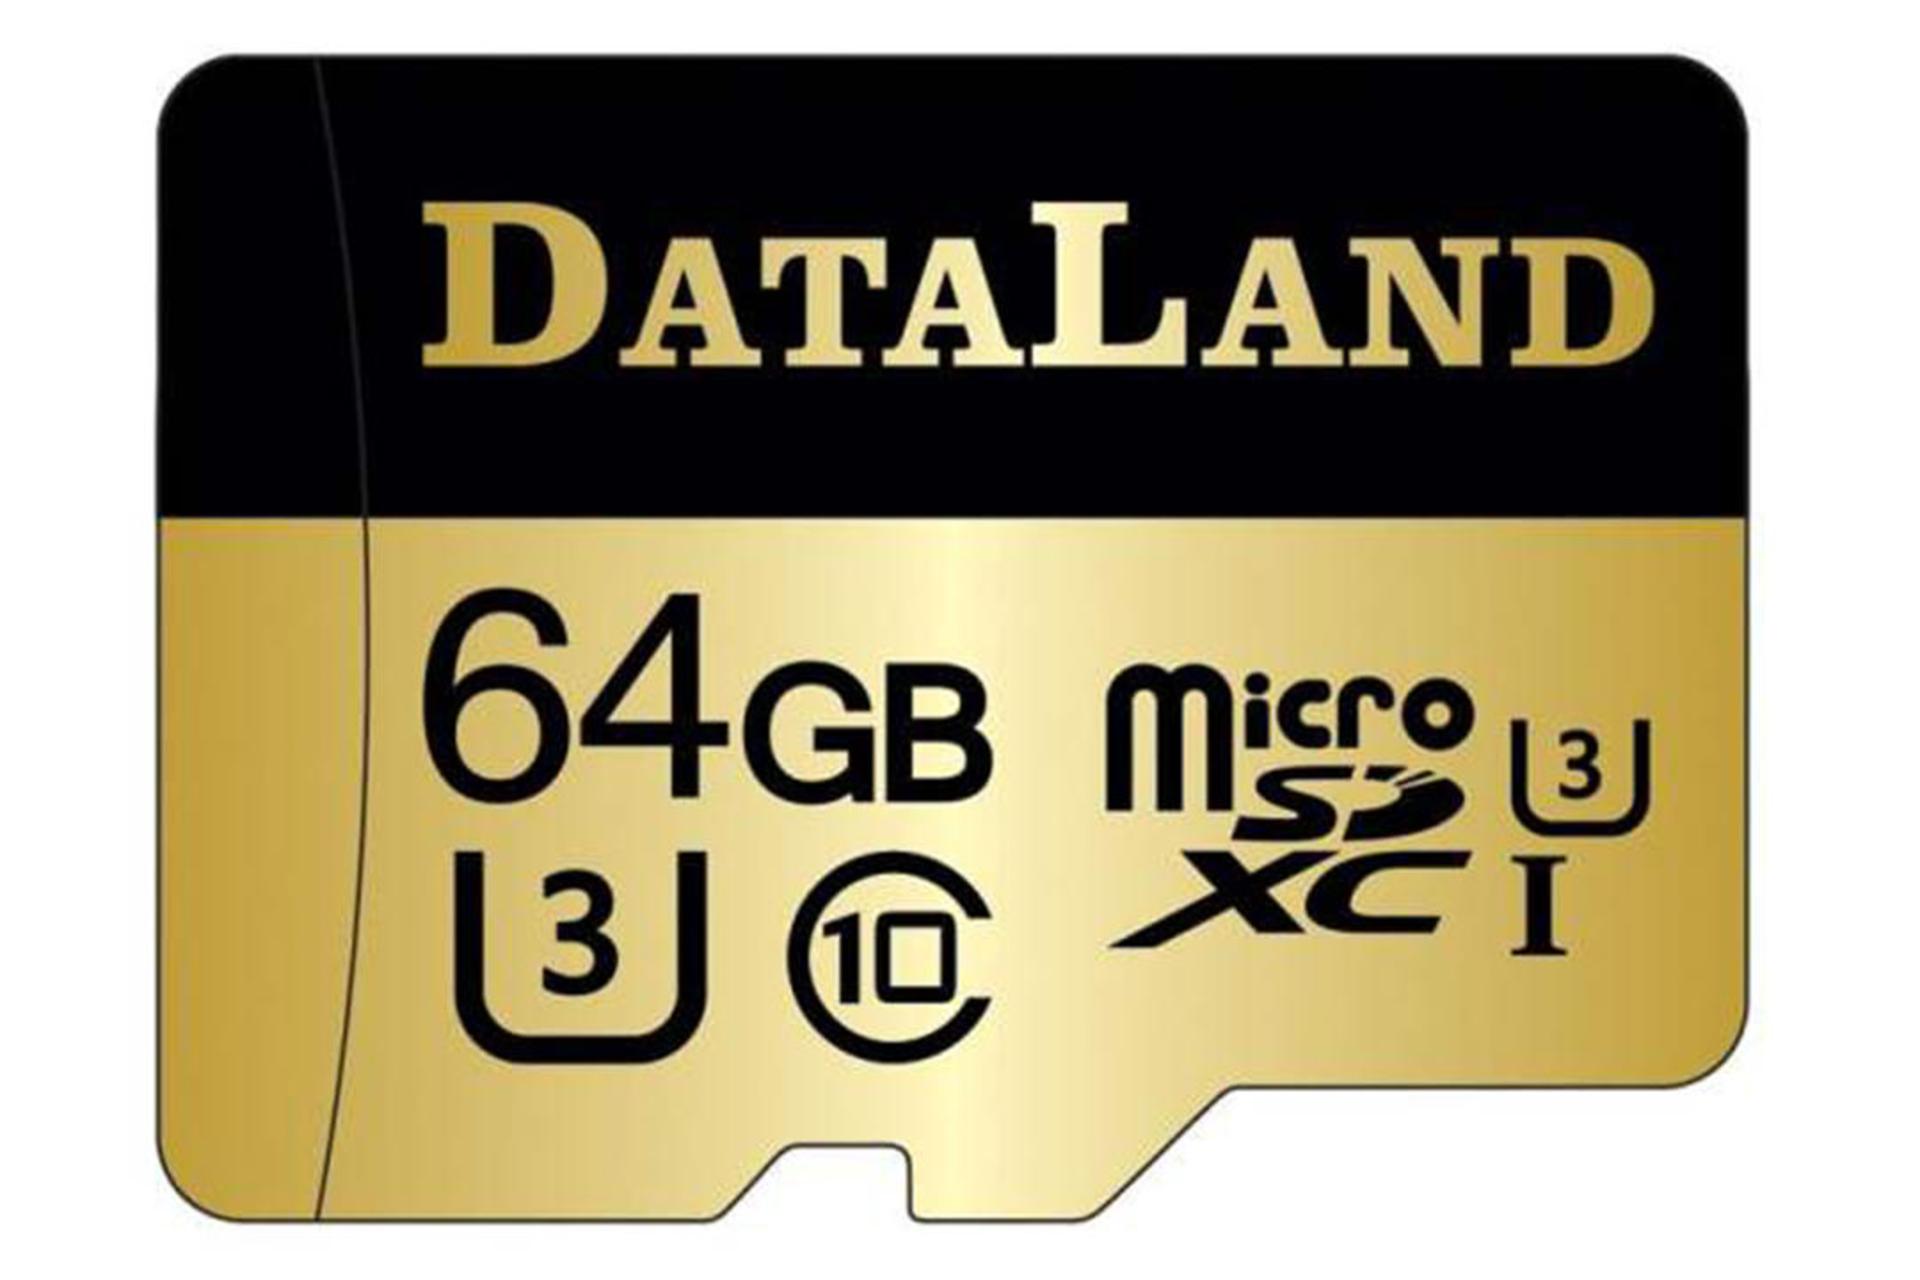 مرجع متخصصين ايران DataLand 600x microSDXC Class 10 UHS-I U3 64GB